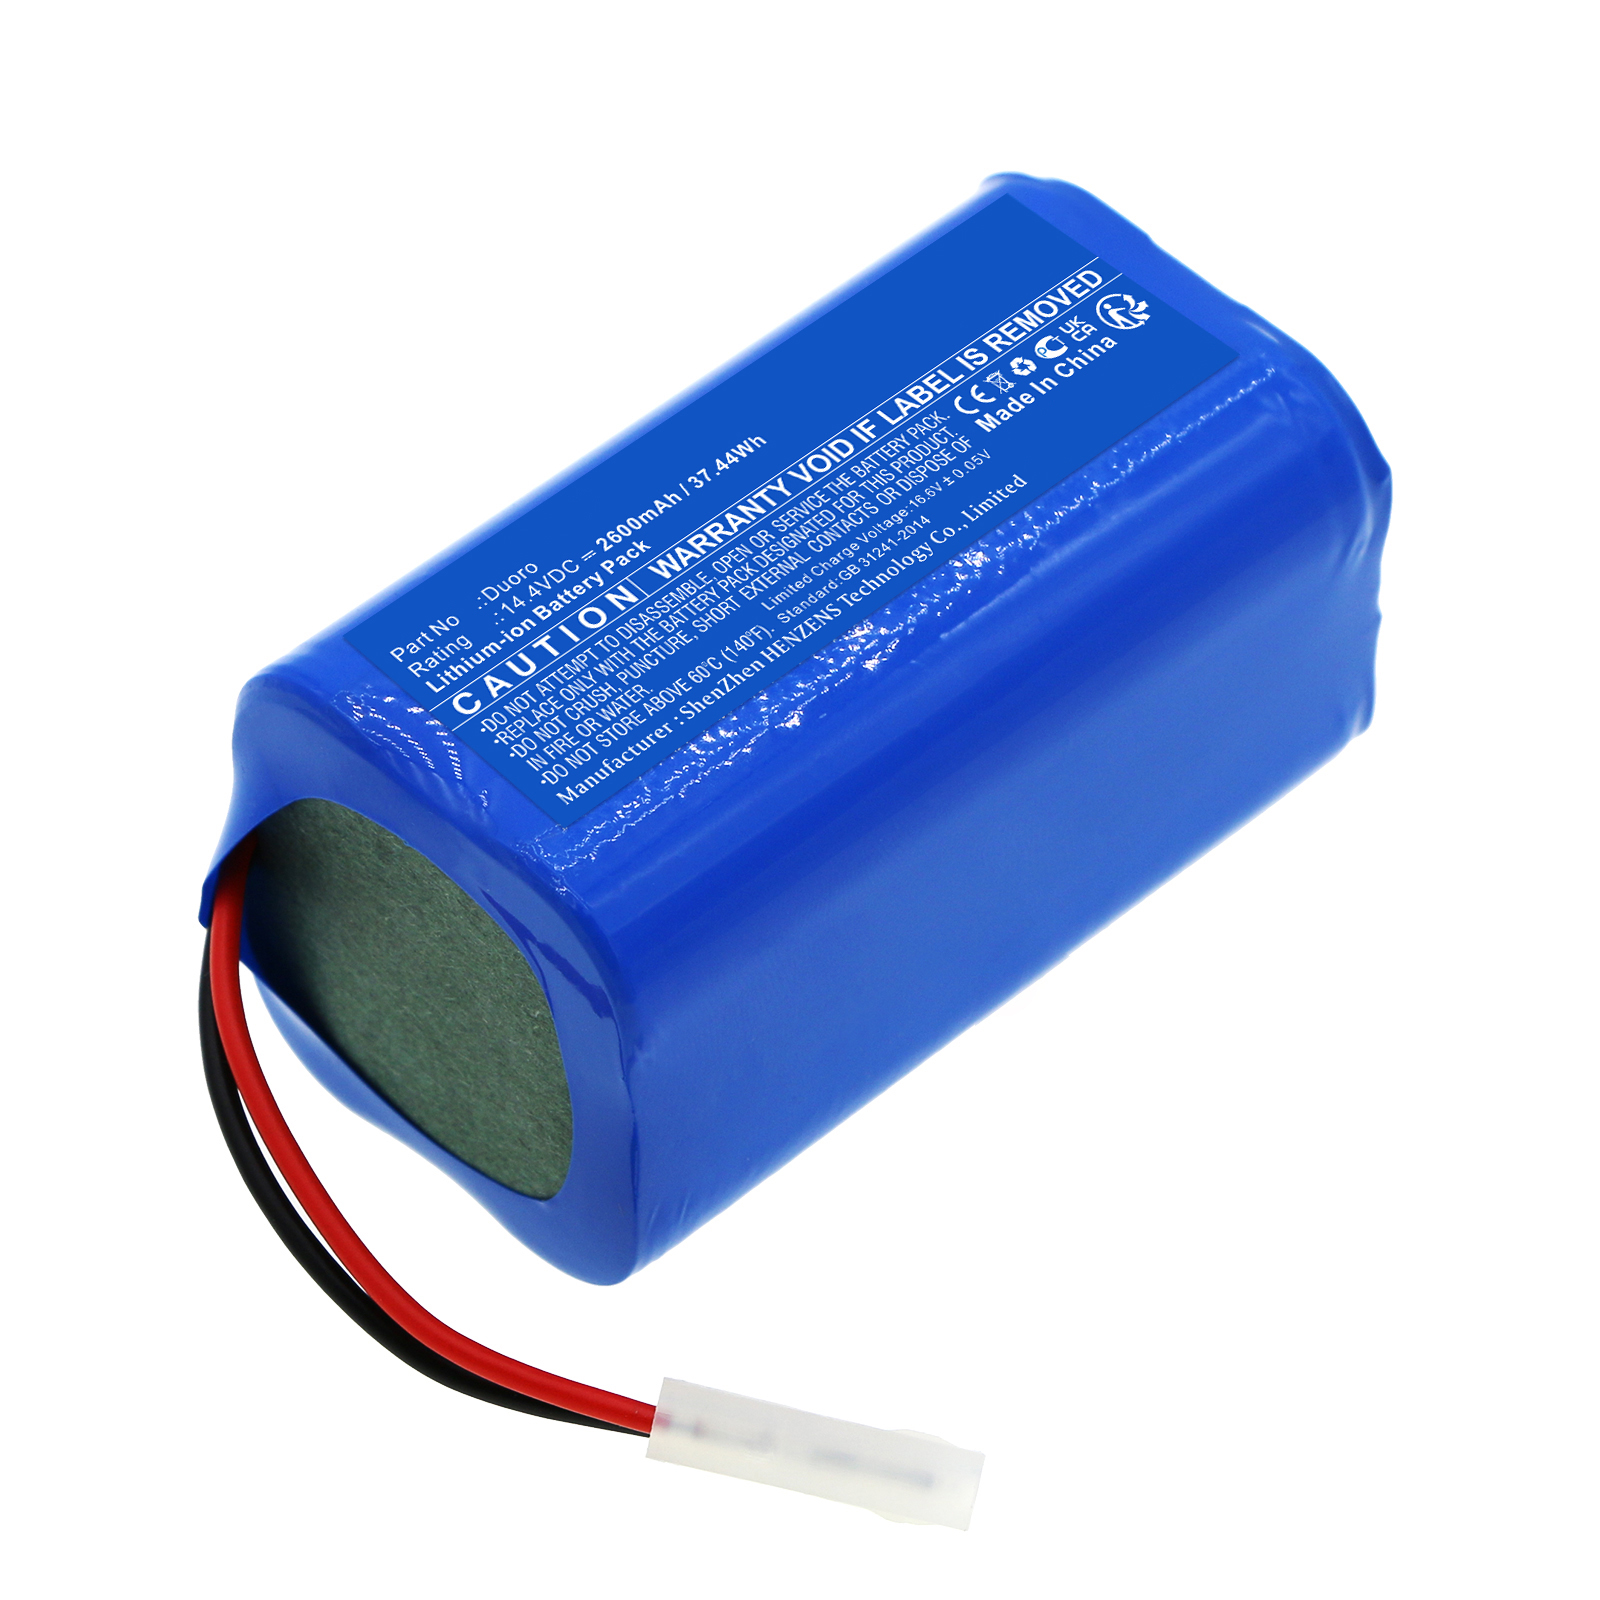 Synergy Digital Vacuum Cleaner Battery, Compatible with Robzone Duoro Vacuum Cleaner Battery (Li-ion, 14.4V, 2600mAh)